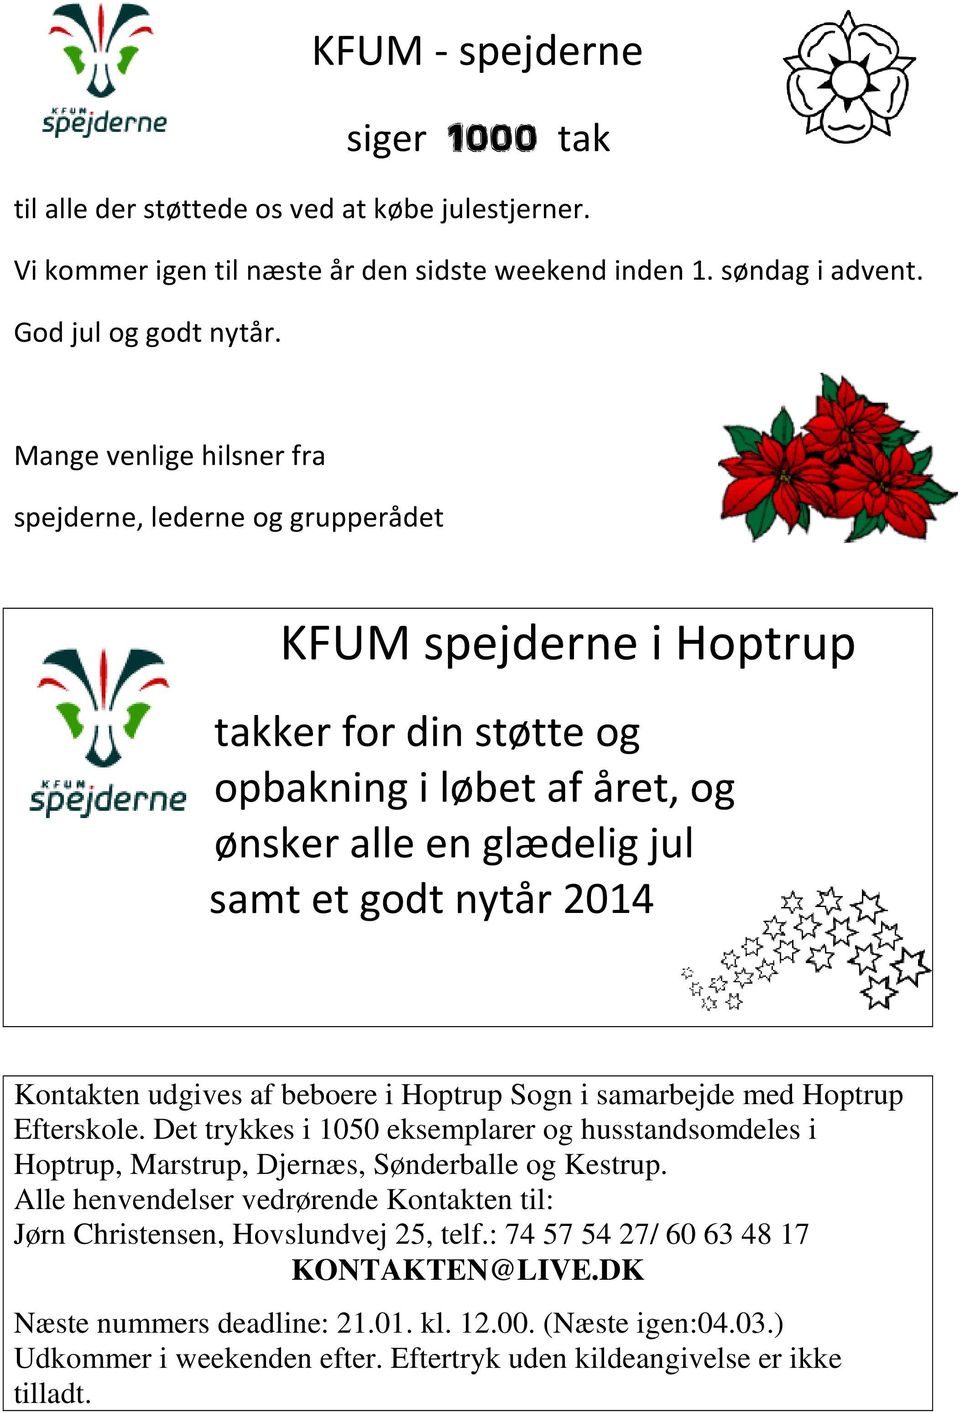 Kontakten udgives af beboere i Hoptrup Sogn i samarbejde med Hoptrup Efterskole. Det trykkes i 1050 eksemplarer og husstandsomdeles i Hoptrup, Marstrup, Djernæs, Sønderballe og Kestrup.